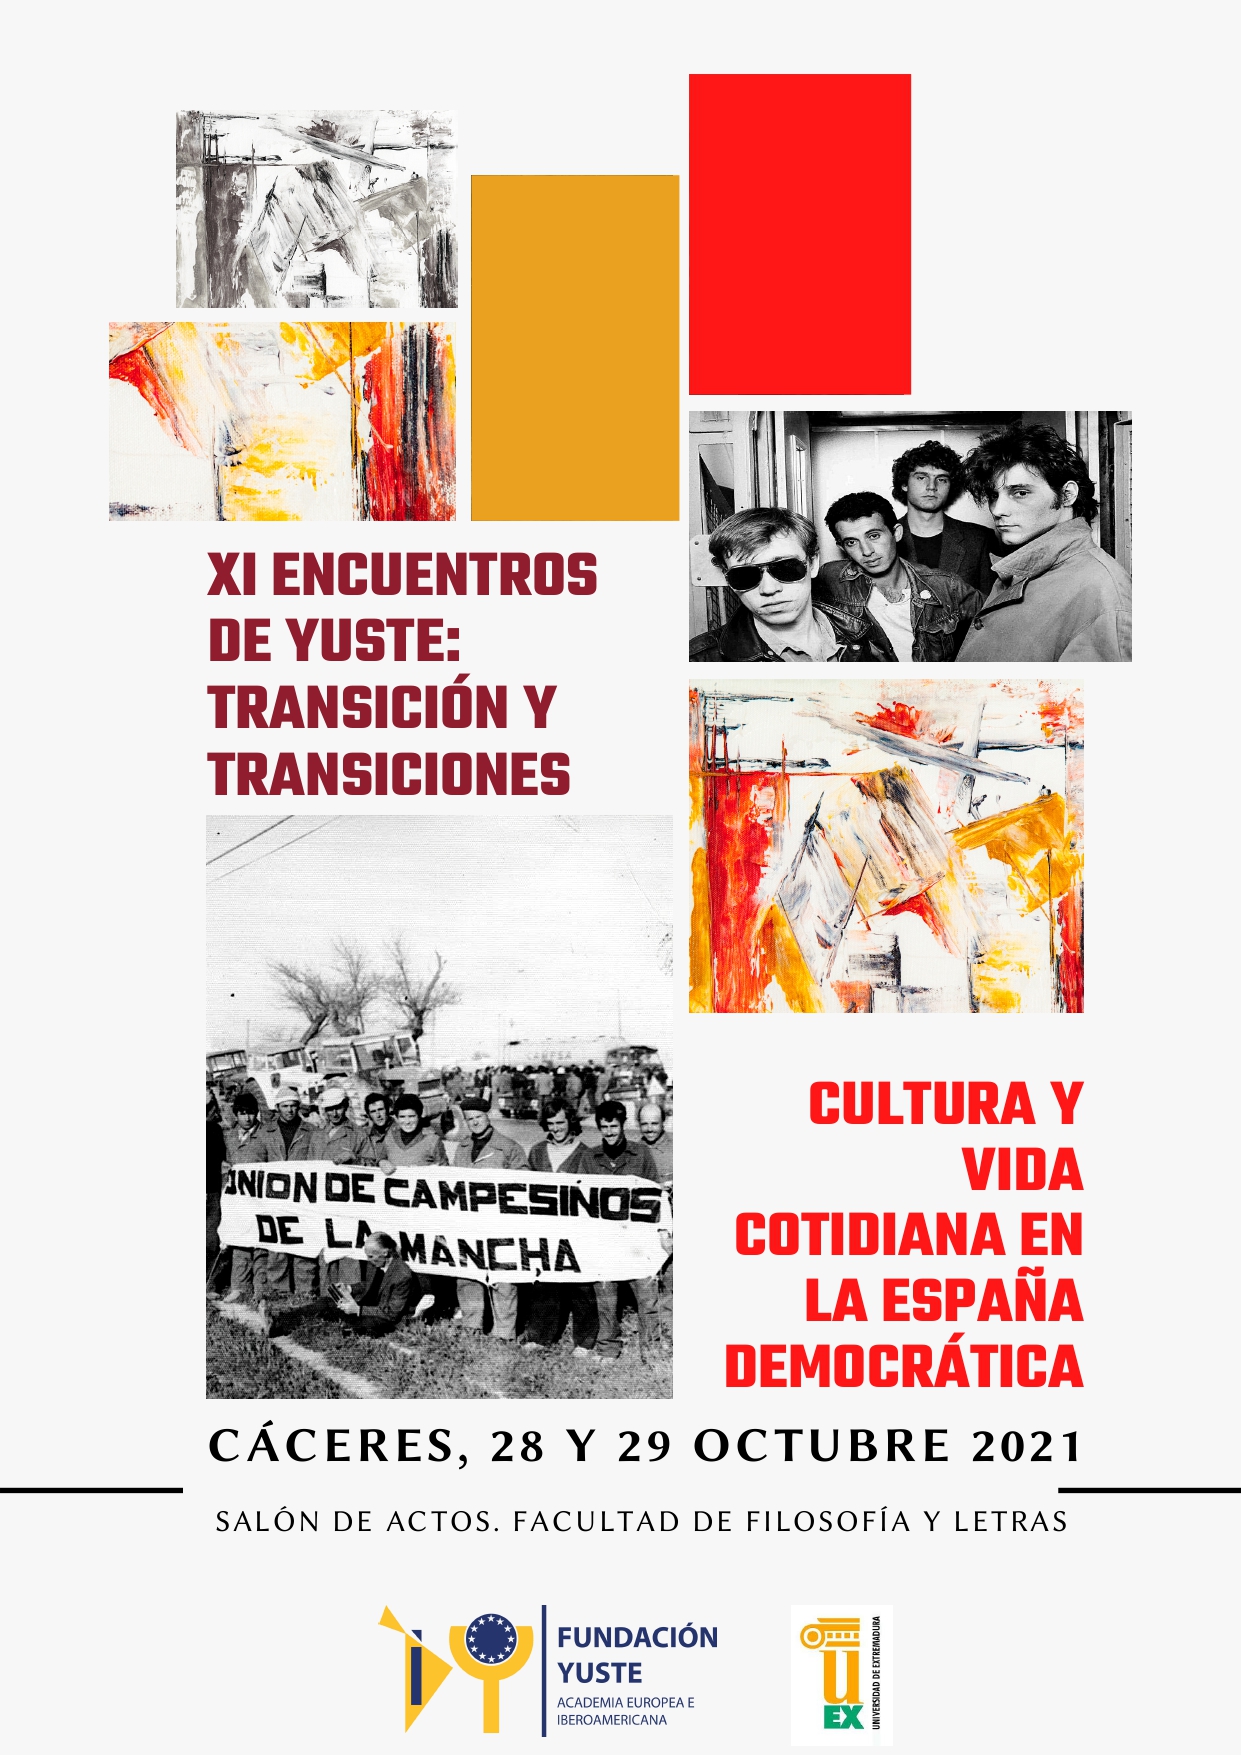 XI-Encuentros-de-Yuste-Transicion-y-transiciones-Cultura-y-Vida-Cotidiana-en-la-Espana-democratica